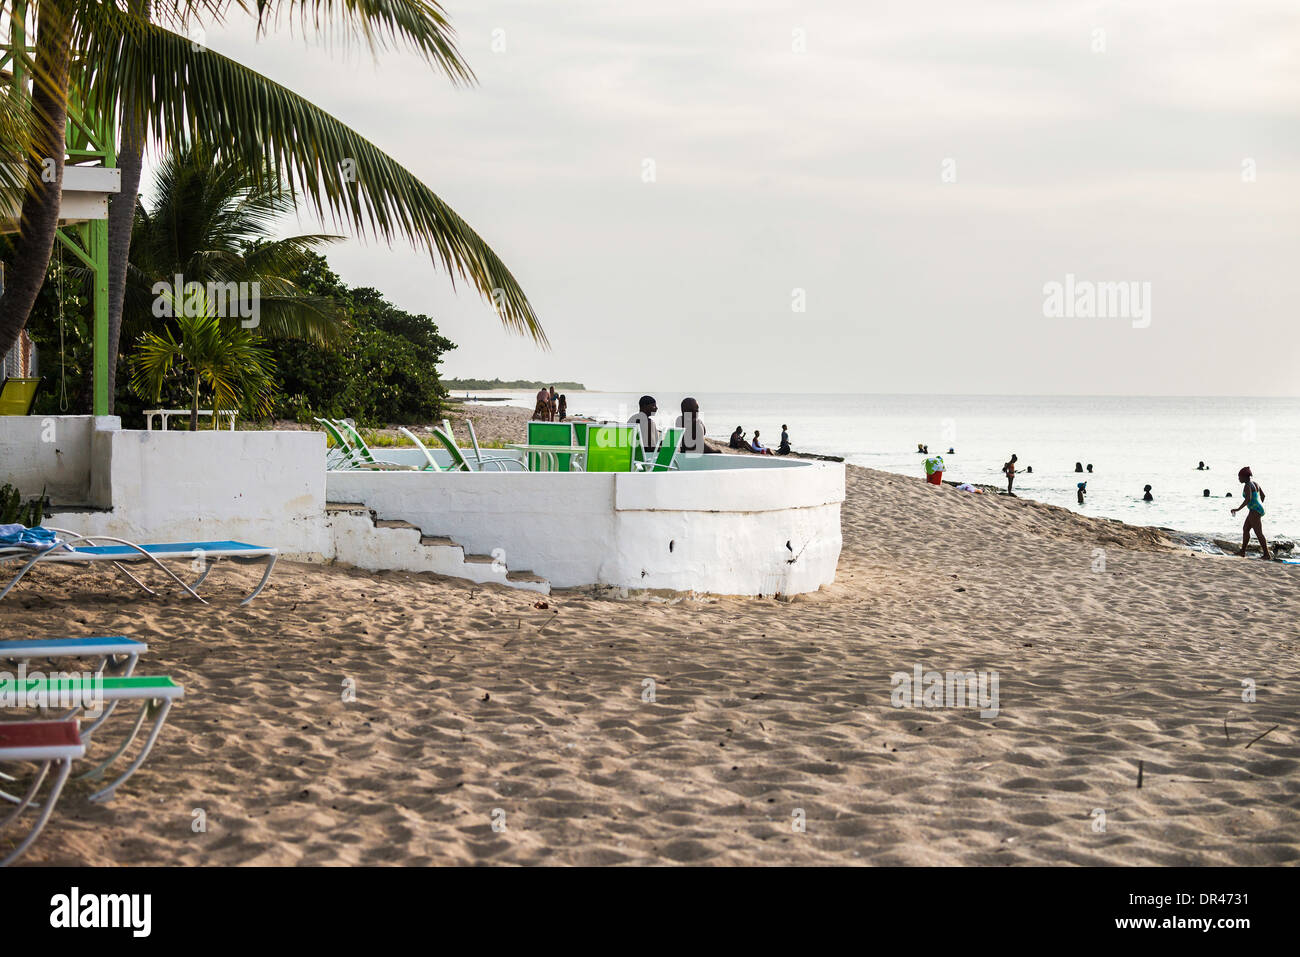 Eine große Gruppe von Menschen, vor allem Afro-Amerikaner, Schwimmen und spielen am Strand von Sandburg am westlichen Ende der St. Croix, Amerikanische Jungferninseln genießen. Stockfoto